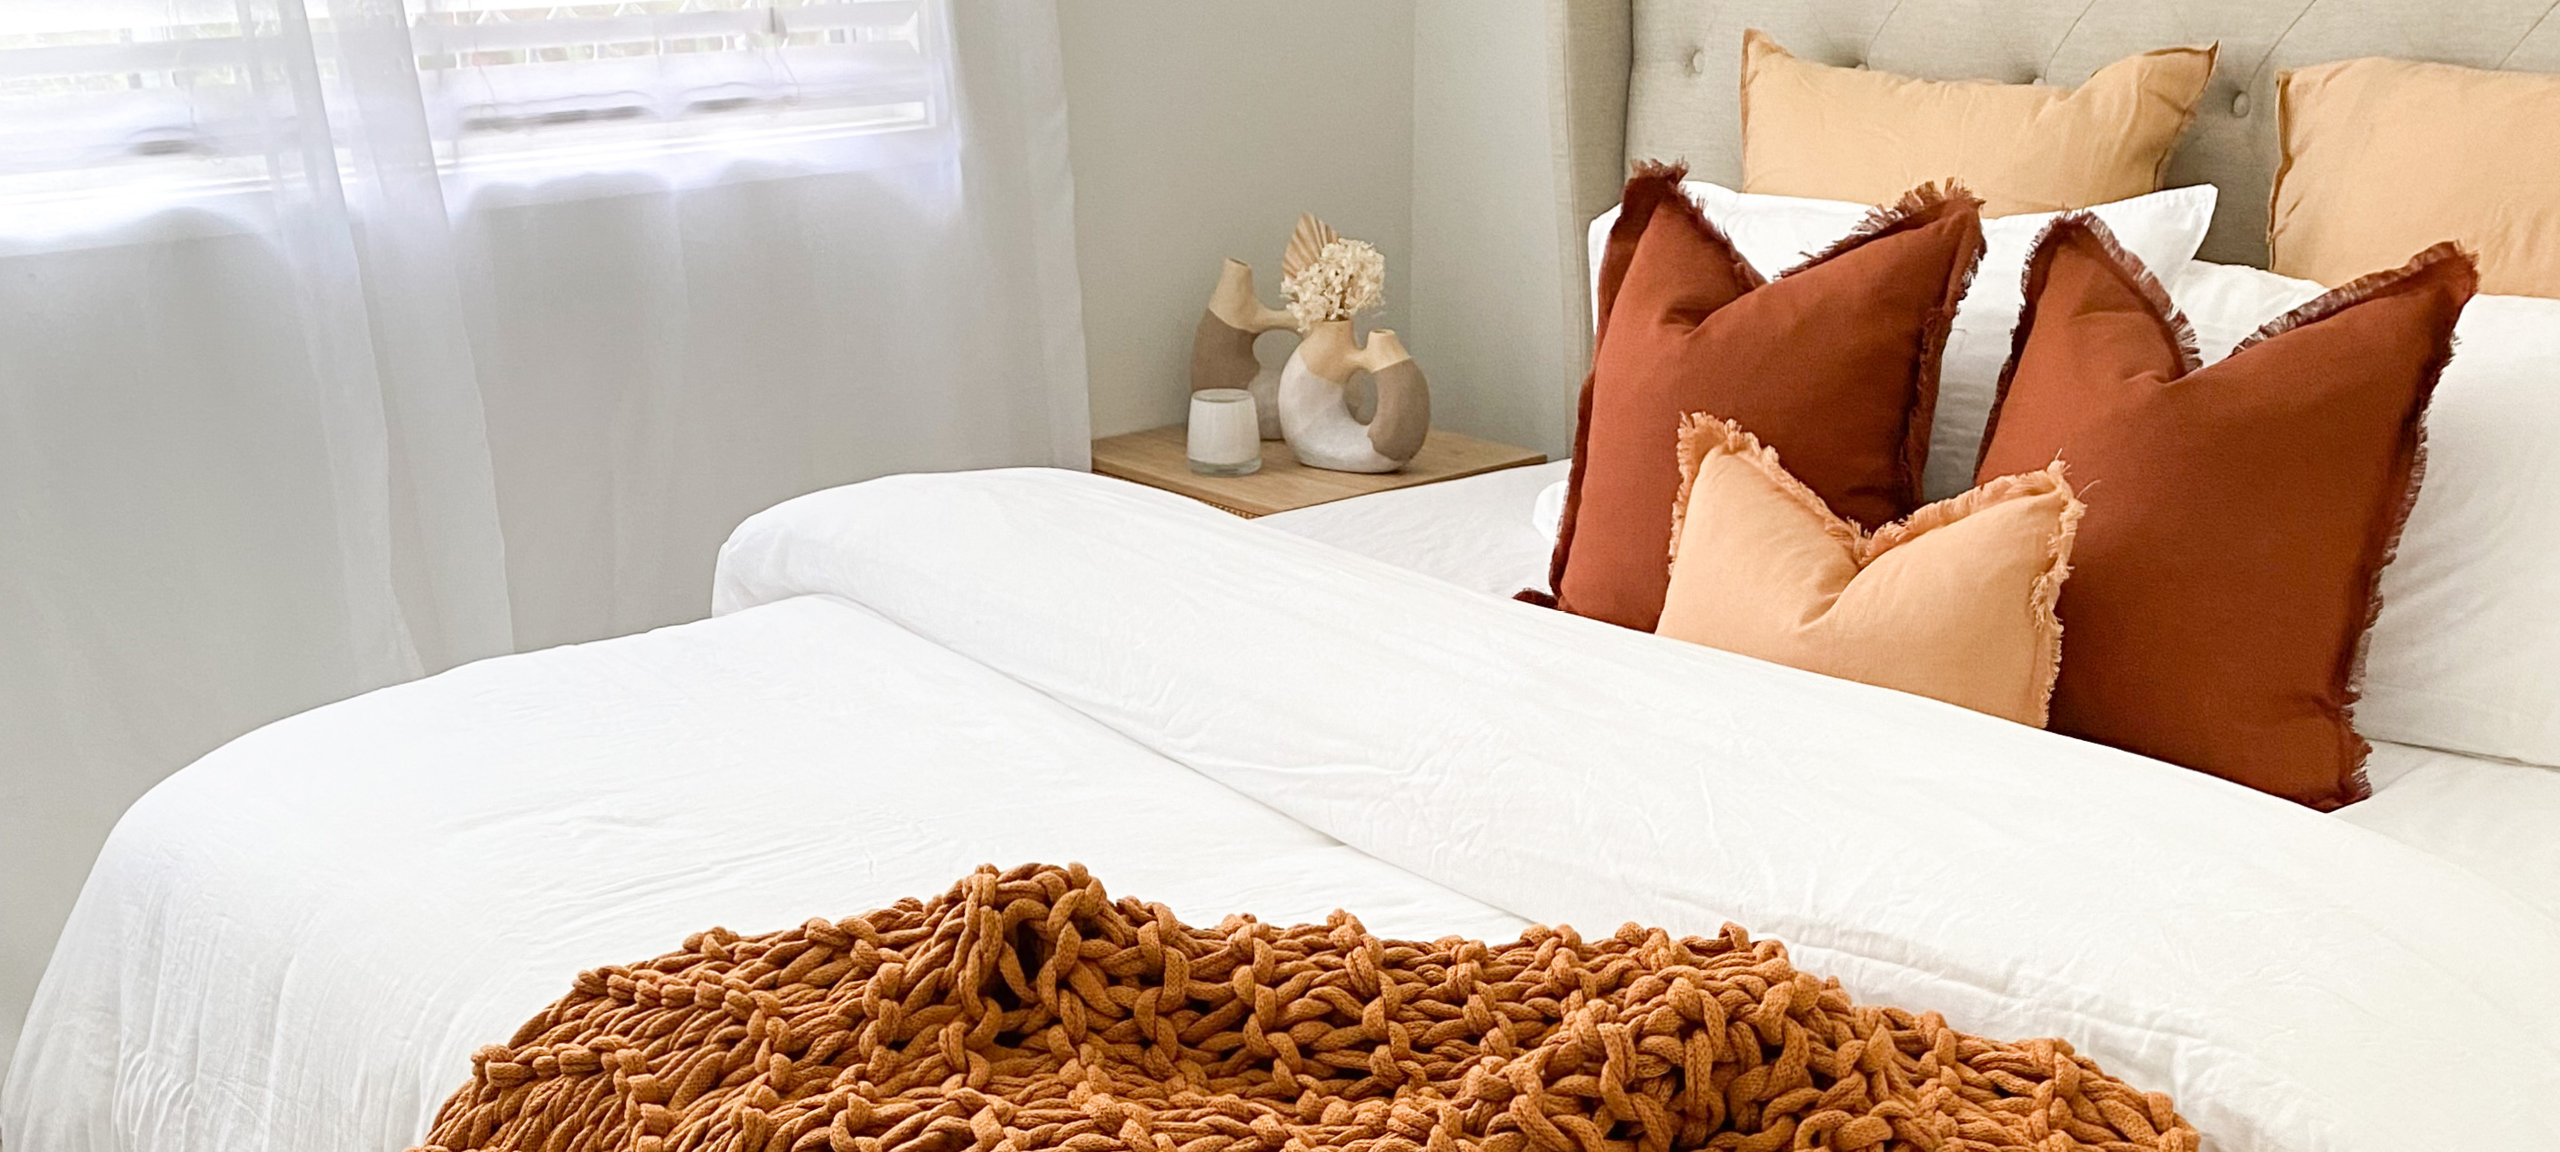 Pillow Talk autumn bedroom styling